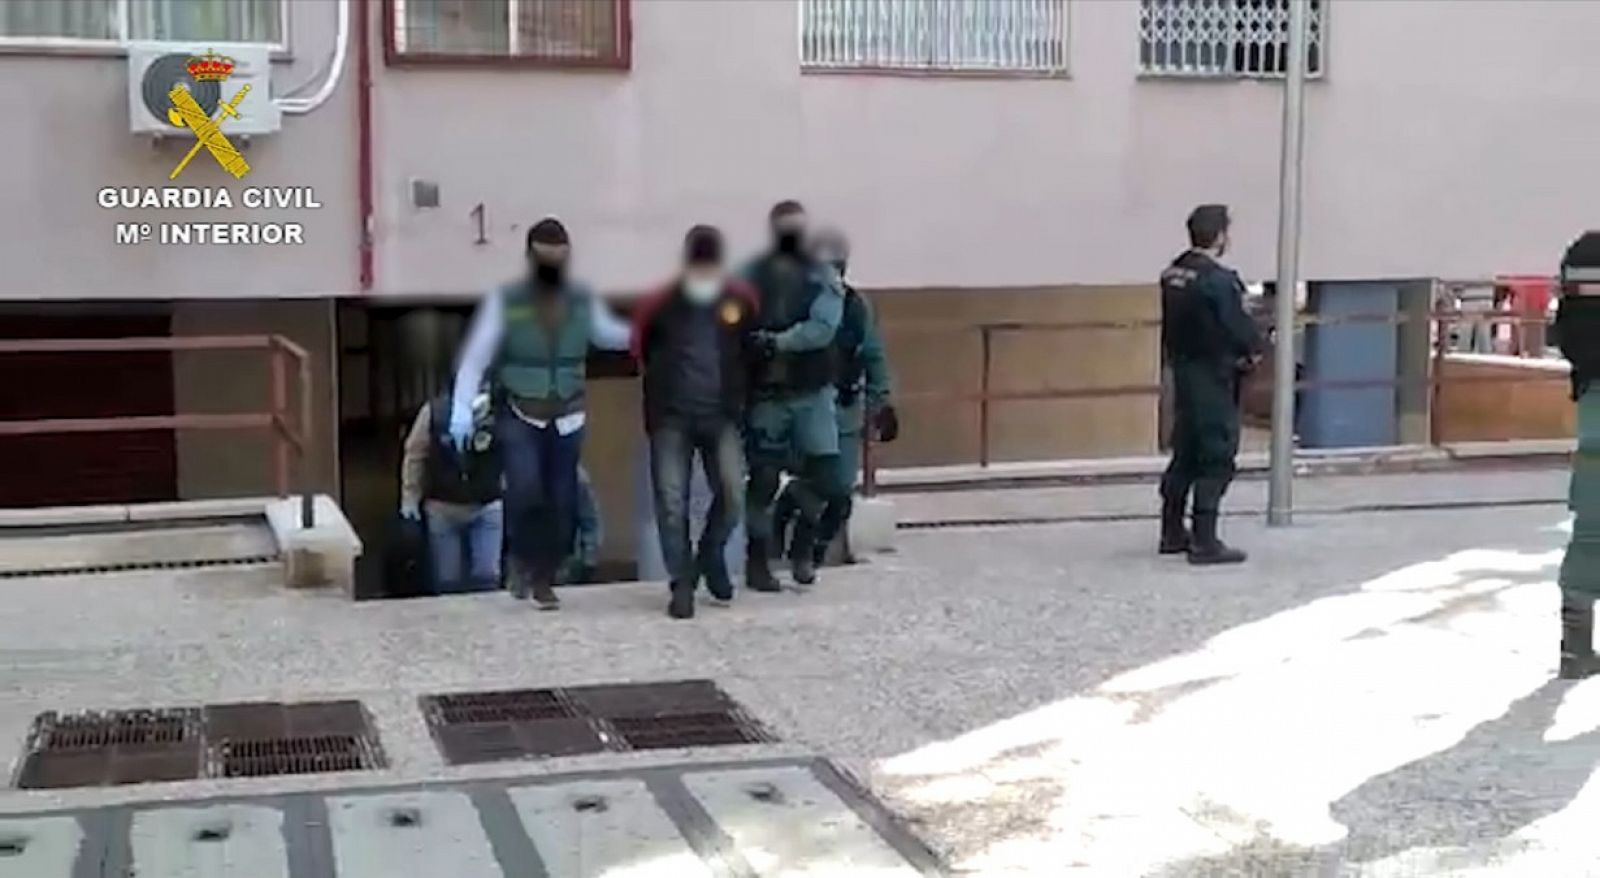 La Guardia Civil detiene a un presunto miembro de Daesh en Madrid